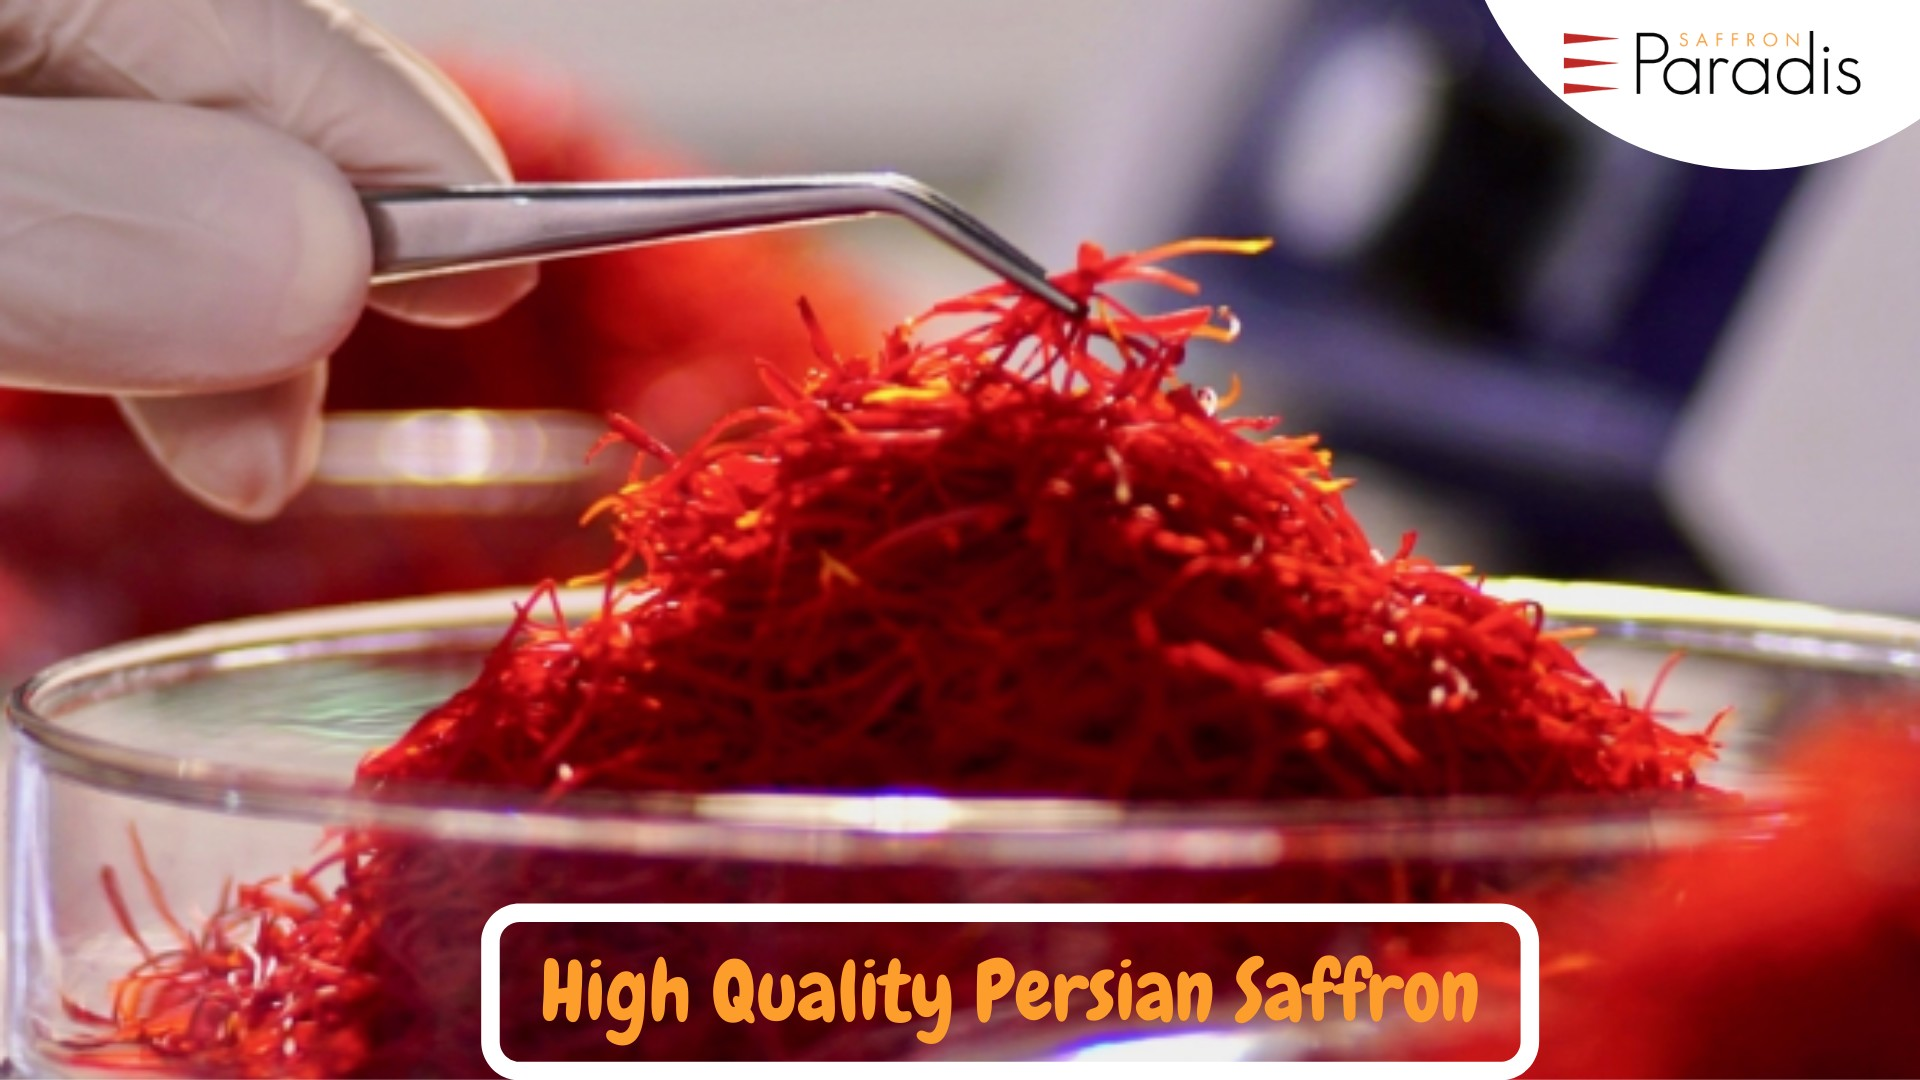 Buy Saffron Products Online